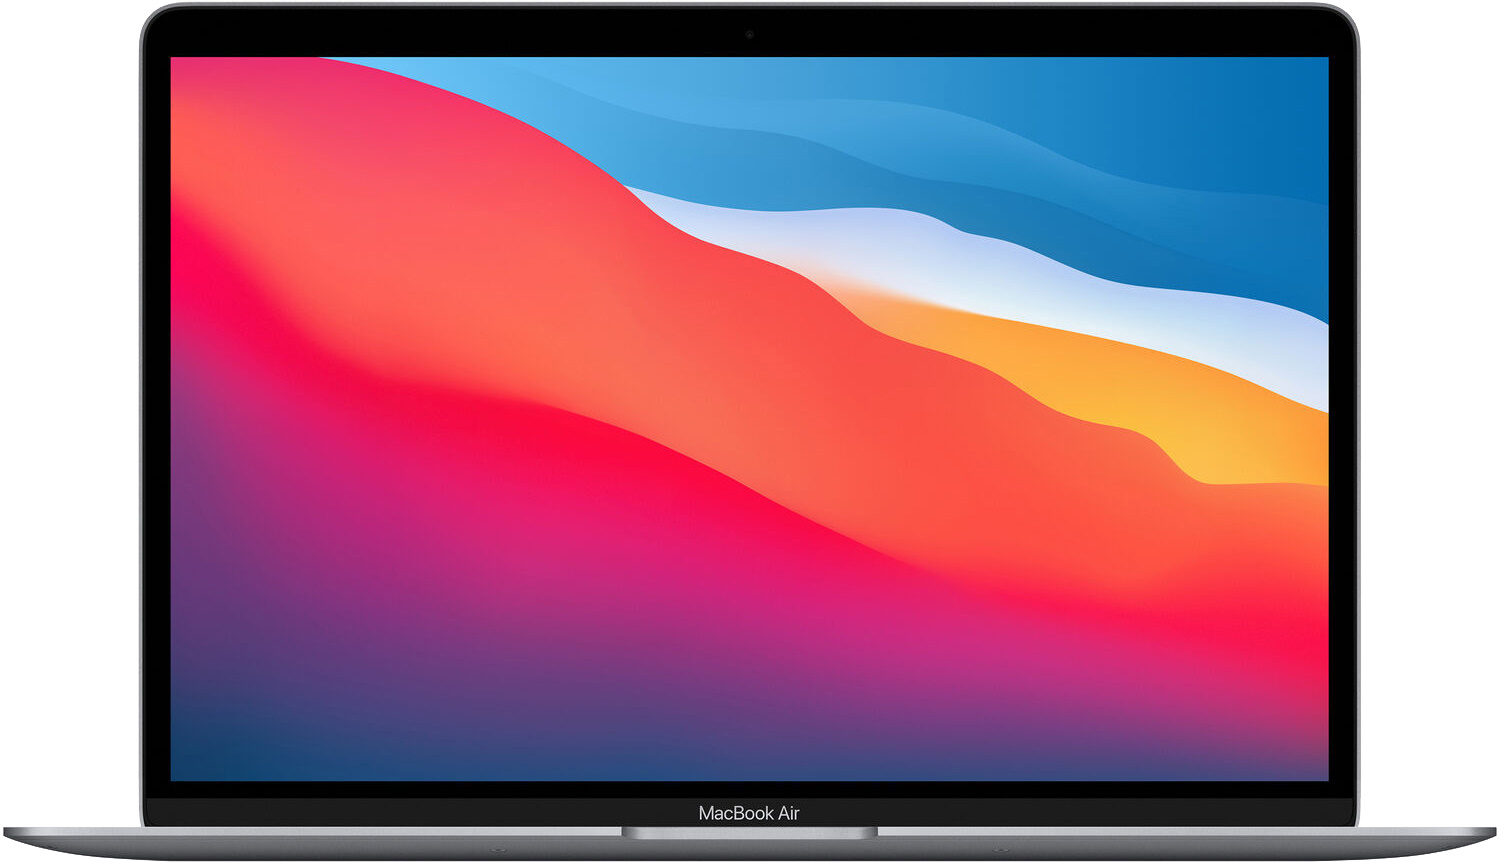 Ноутбук Apple MacBook Air 13 Space Gray Late 2020 (MGN73) - зображення 1